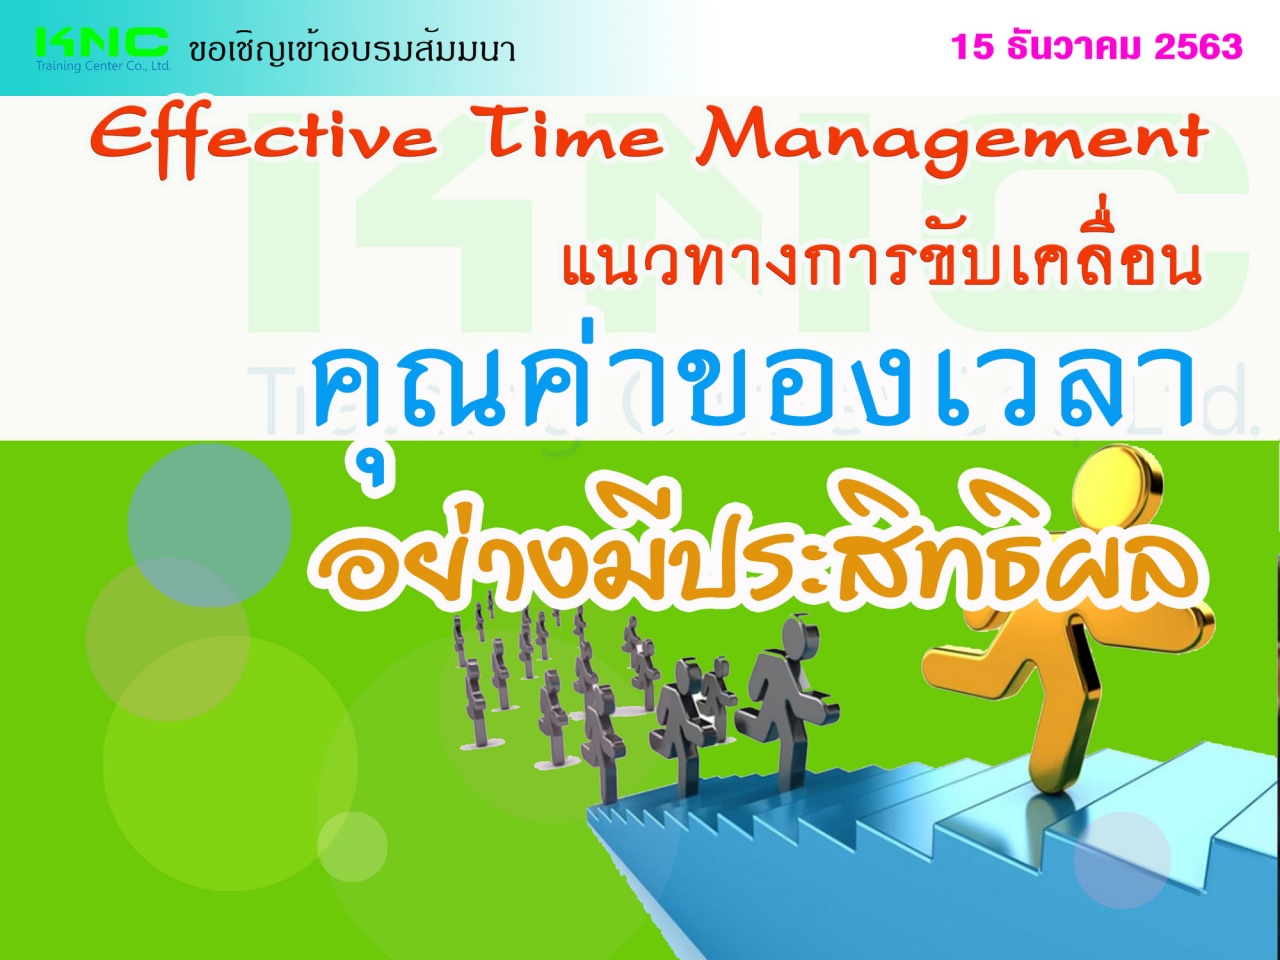 แนวทางการขับเคลื่อน “คุณค่าของเวลา” อย่างมีประสิทธิผล (Effective  Time  Management)